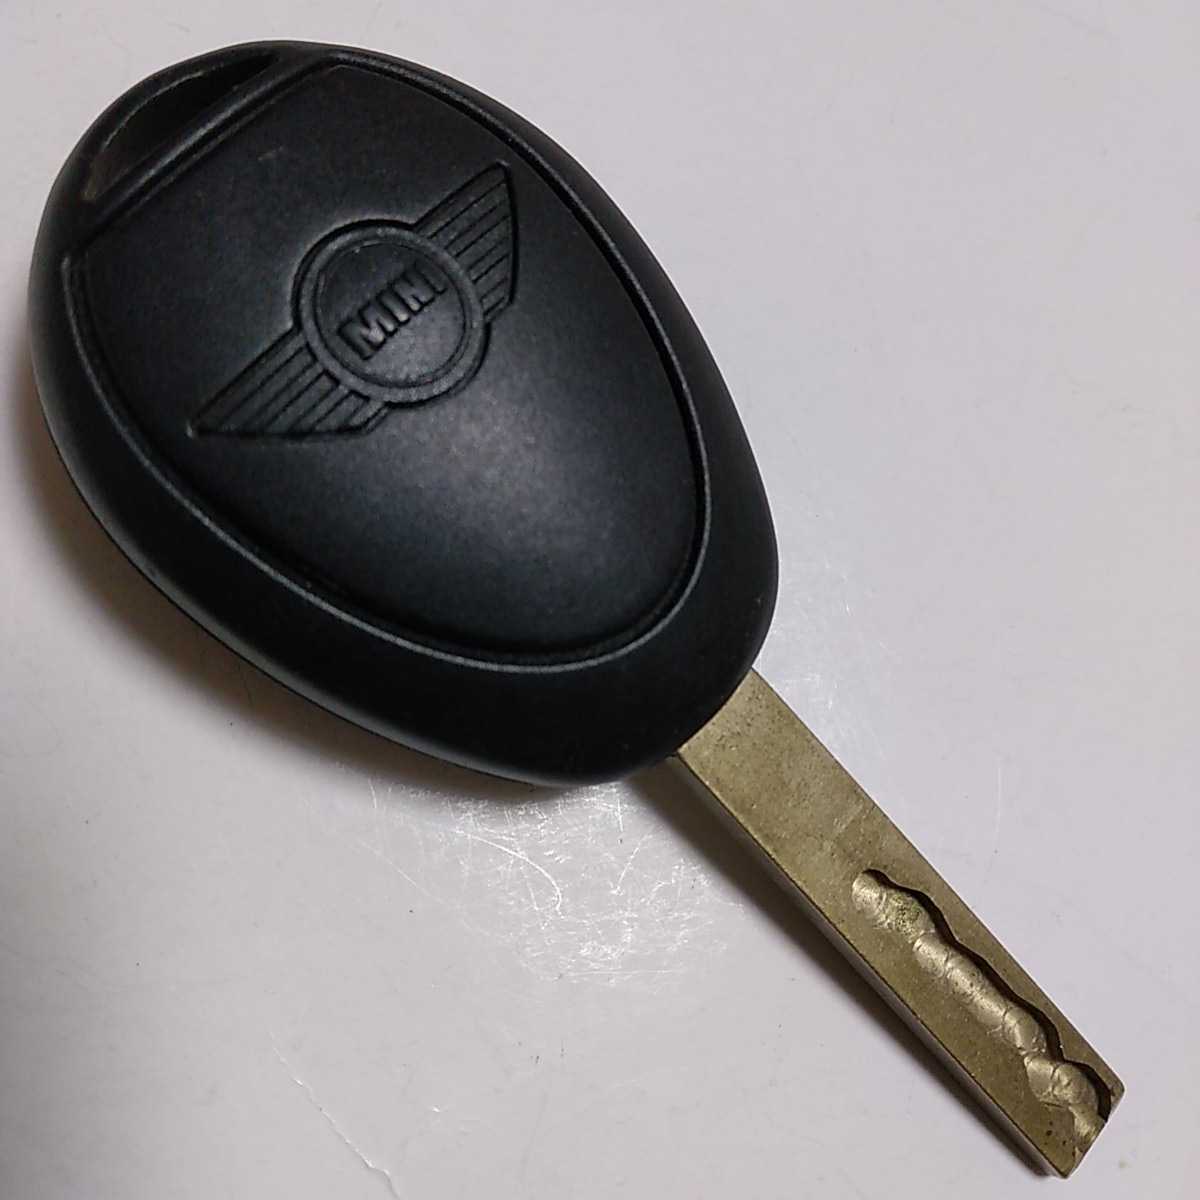 ミニ Mini ミニクーパー キー スペアキー 鍵 旧車 古い鍵 コレクション キーホルダー 観賞用 メーカー包装済